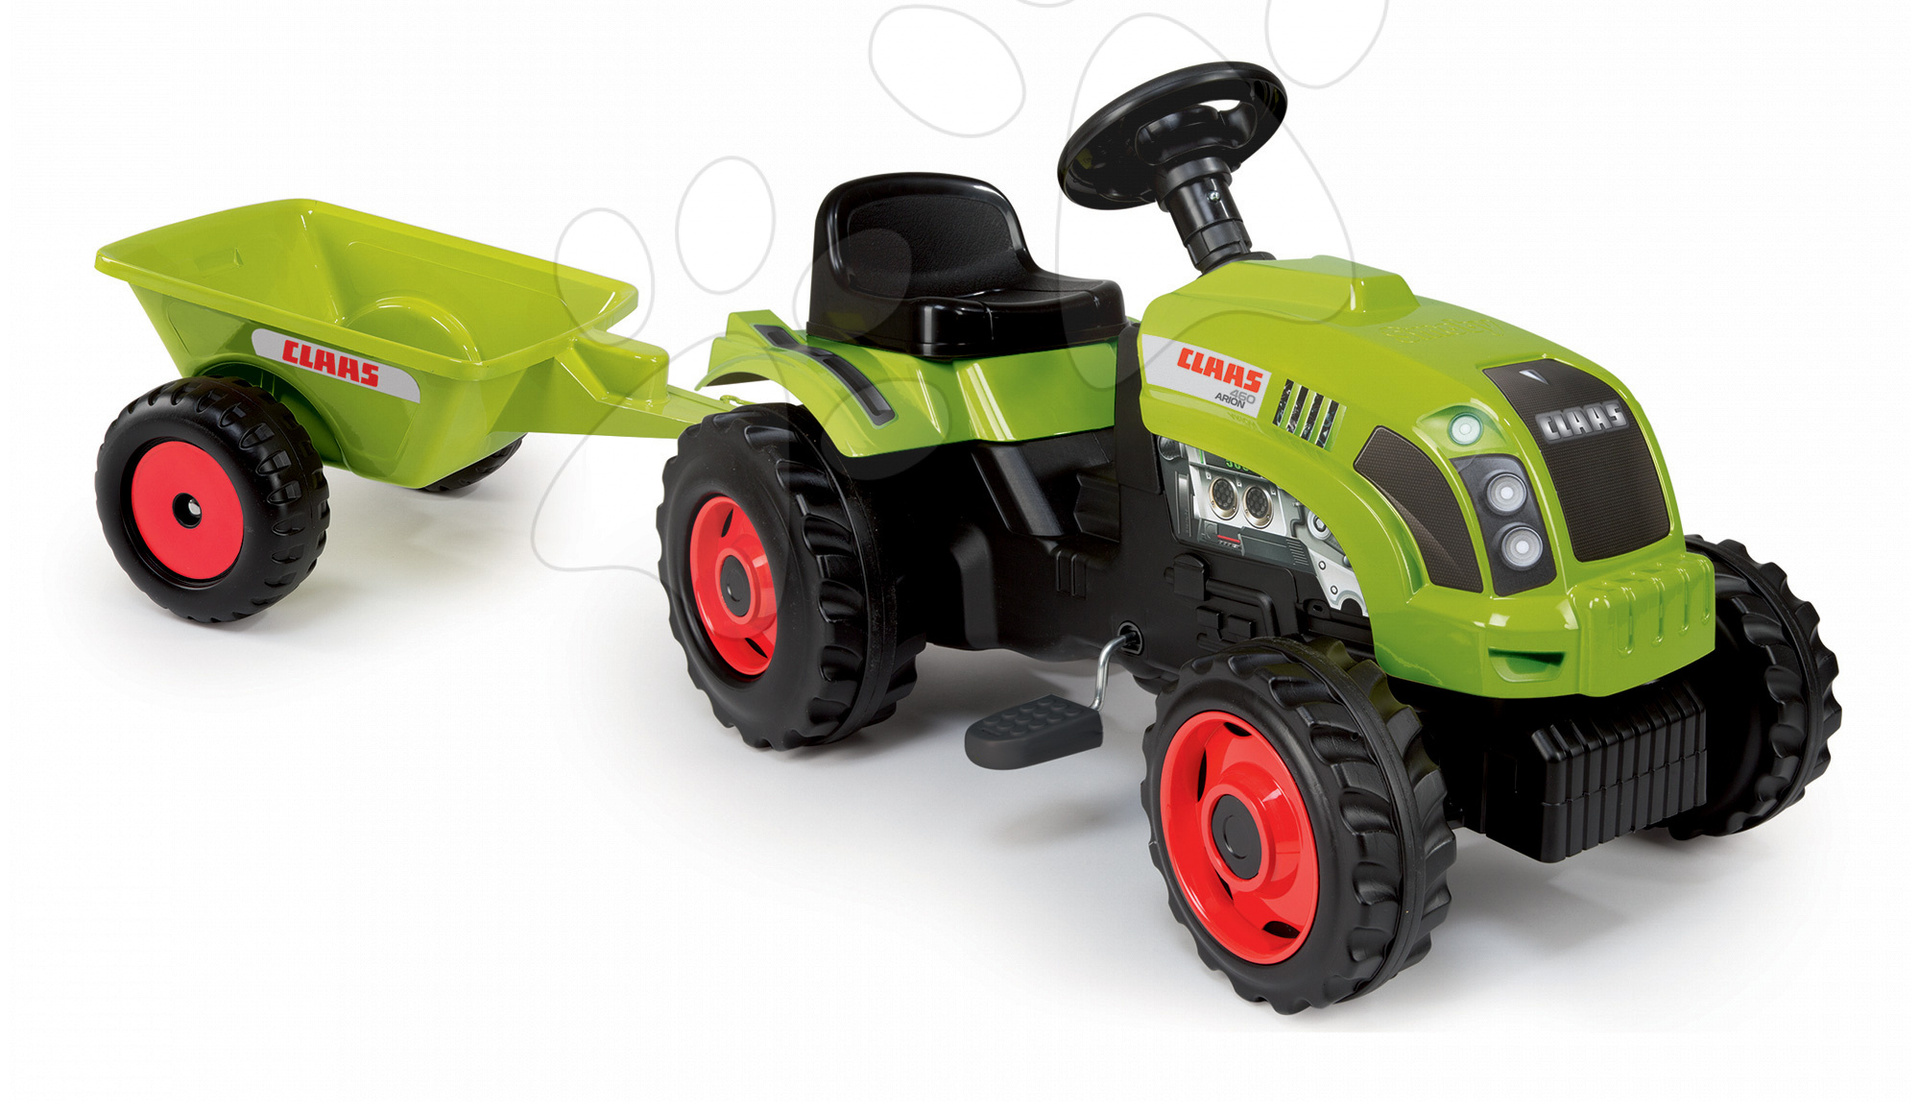 Smoby detský traktor Claas GM 710107 zelený